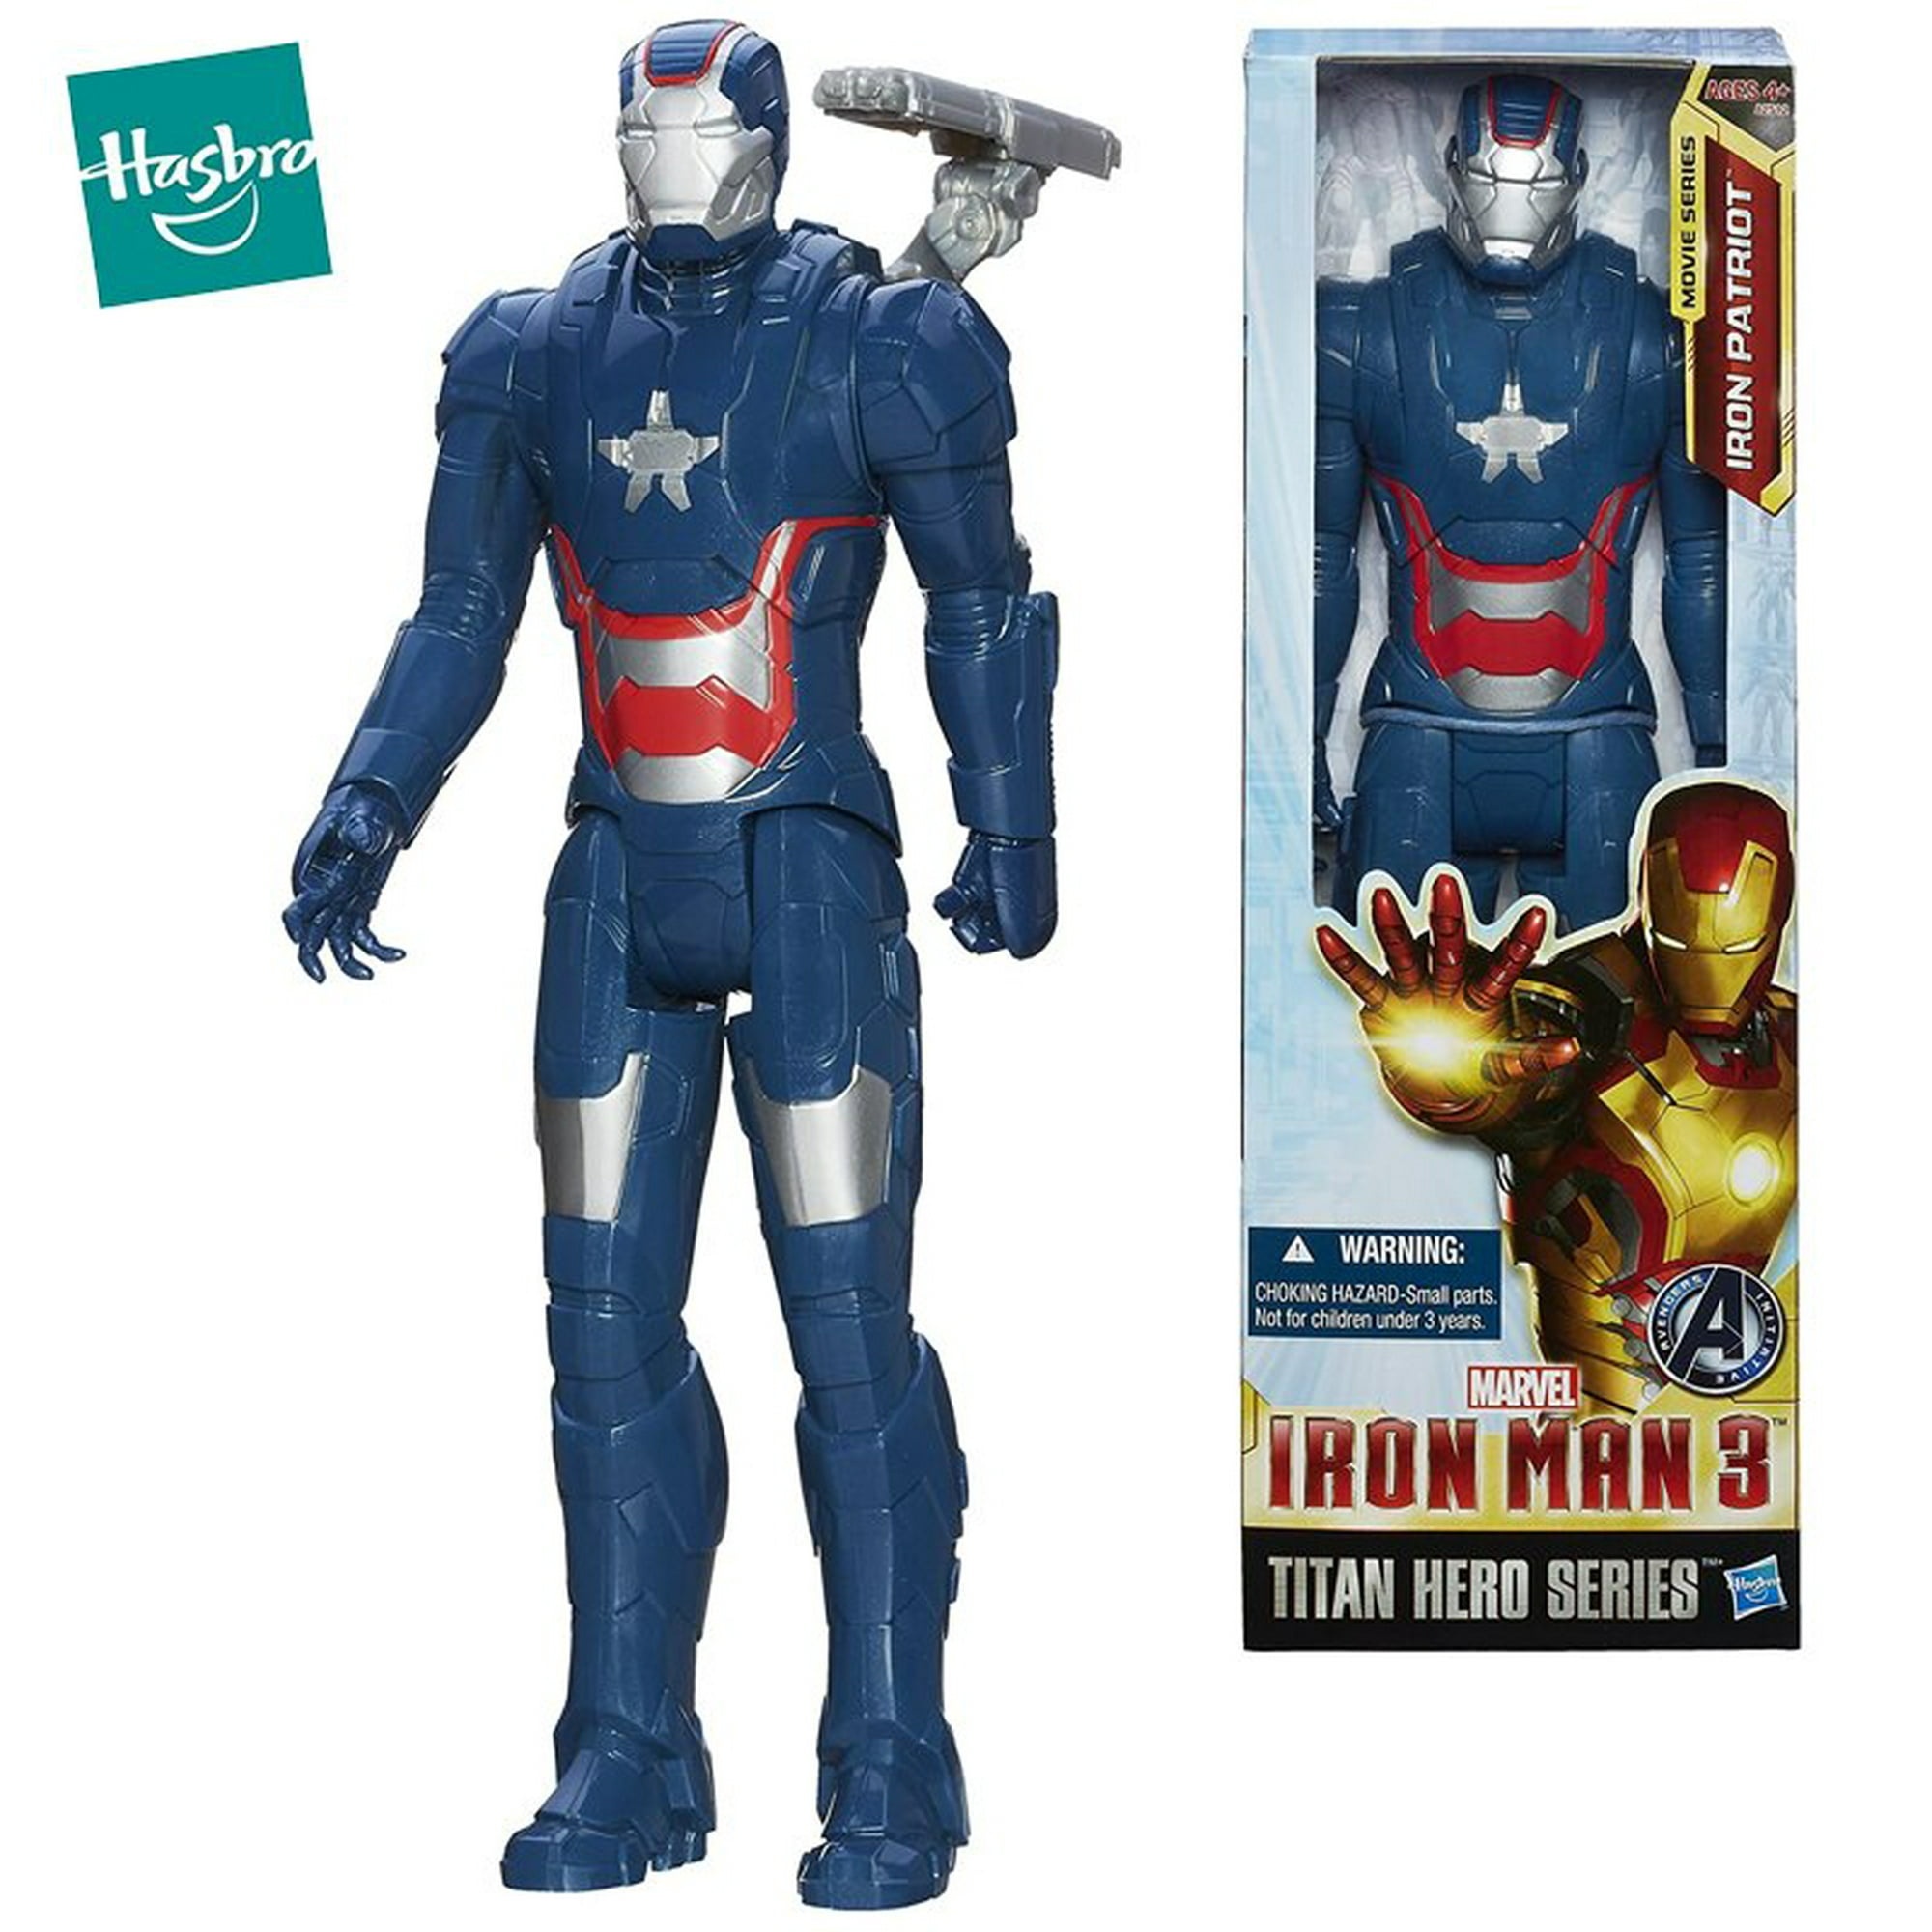  Avengers Marvel Captain America - Figura de acción de Marvel Super  Hero de 6 pulgadas : Juguetes y Juegos